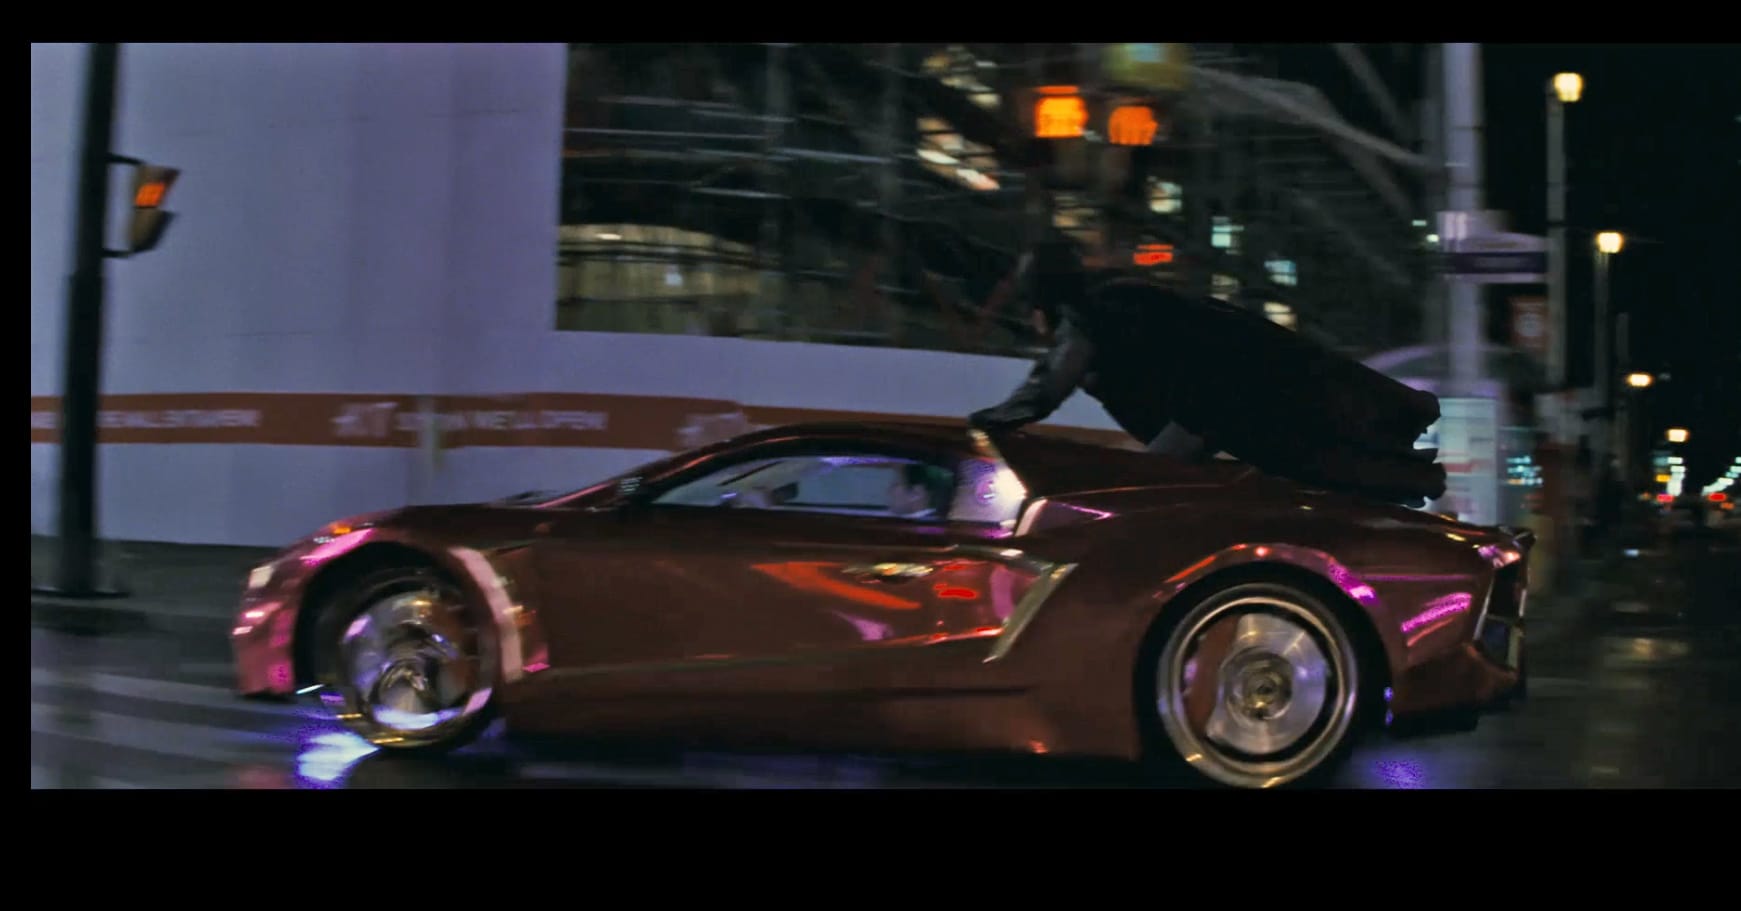 Ein Vaydor G35 ist das Auto des von Jared Leto verkörperten Filmschurken im kommenden Blockbuster "Suicide Squad", in dem neben Leto auch Stars wie Will Smith und Cara Delevingne zu sehen sind. Im Sommer kommt der Film in die Kinos.